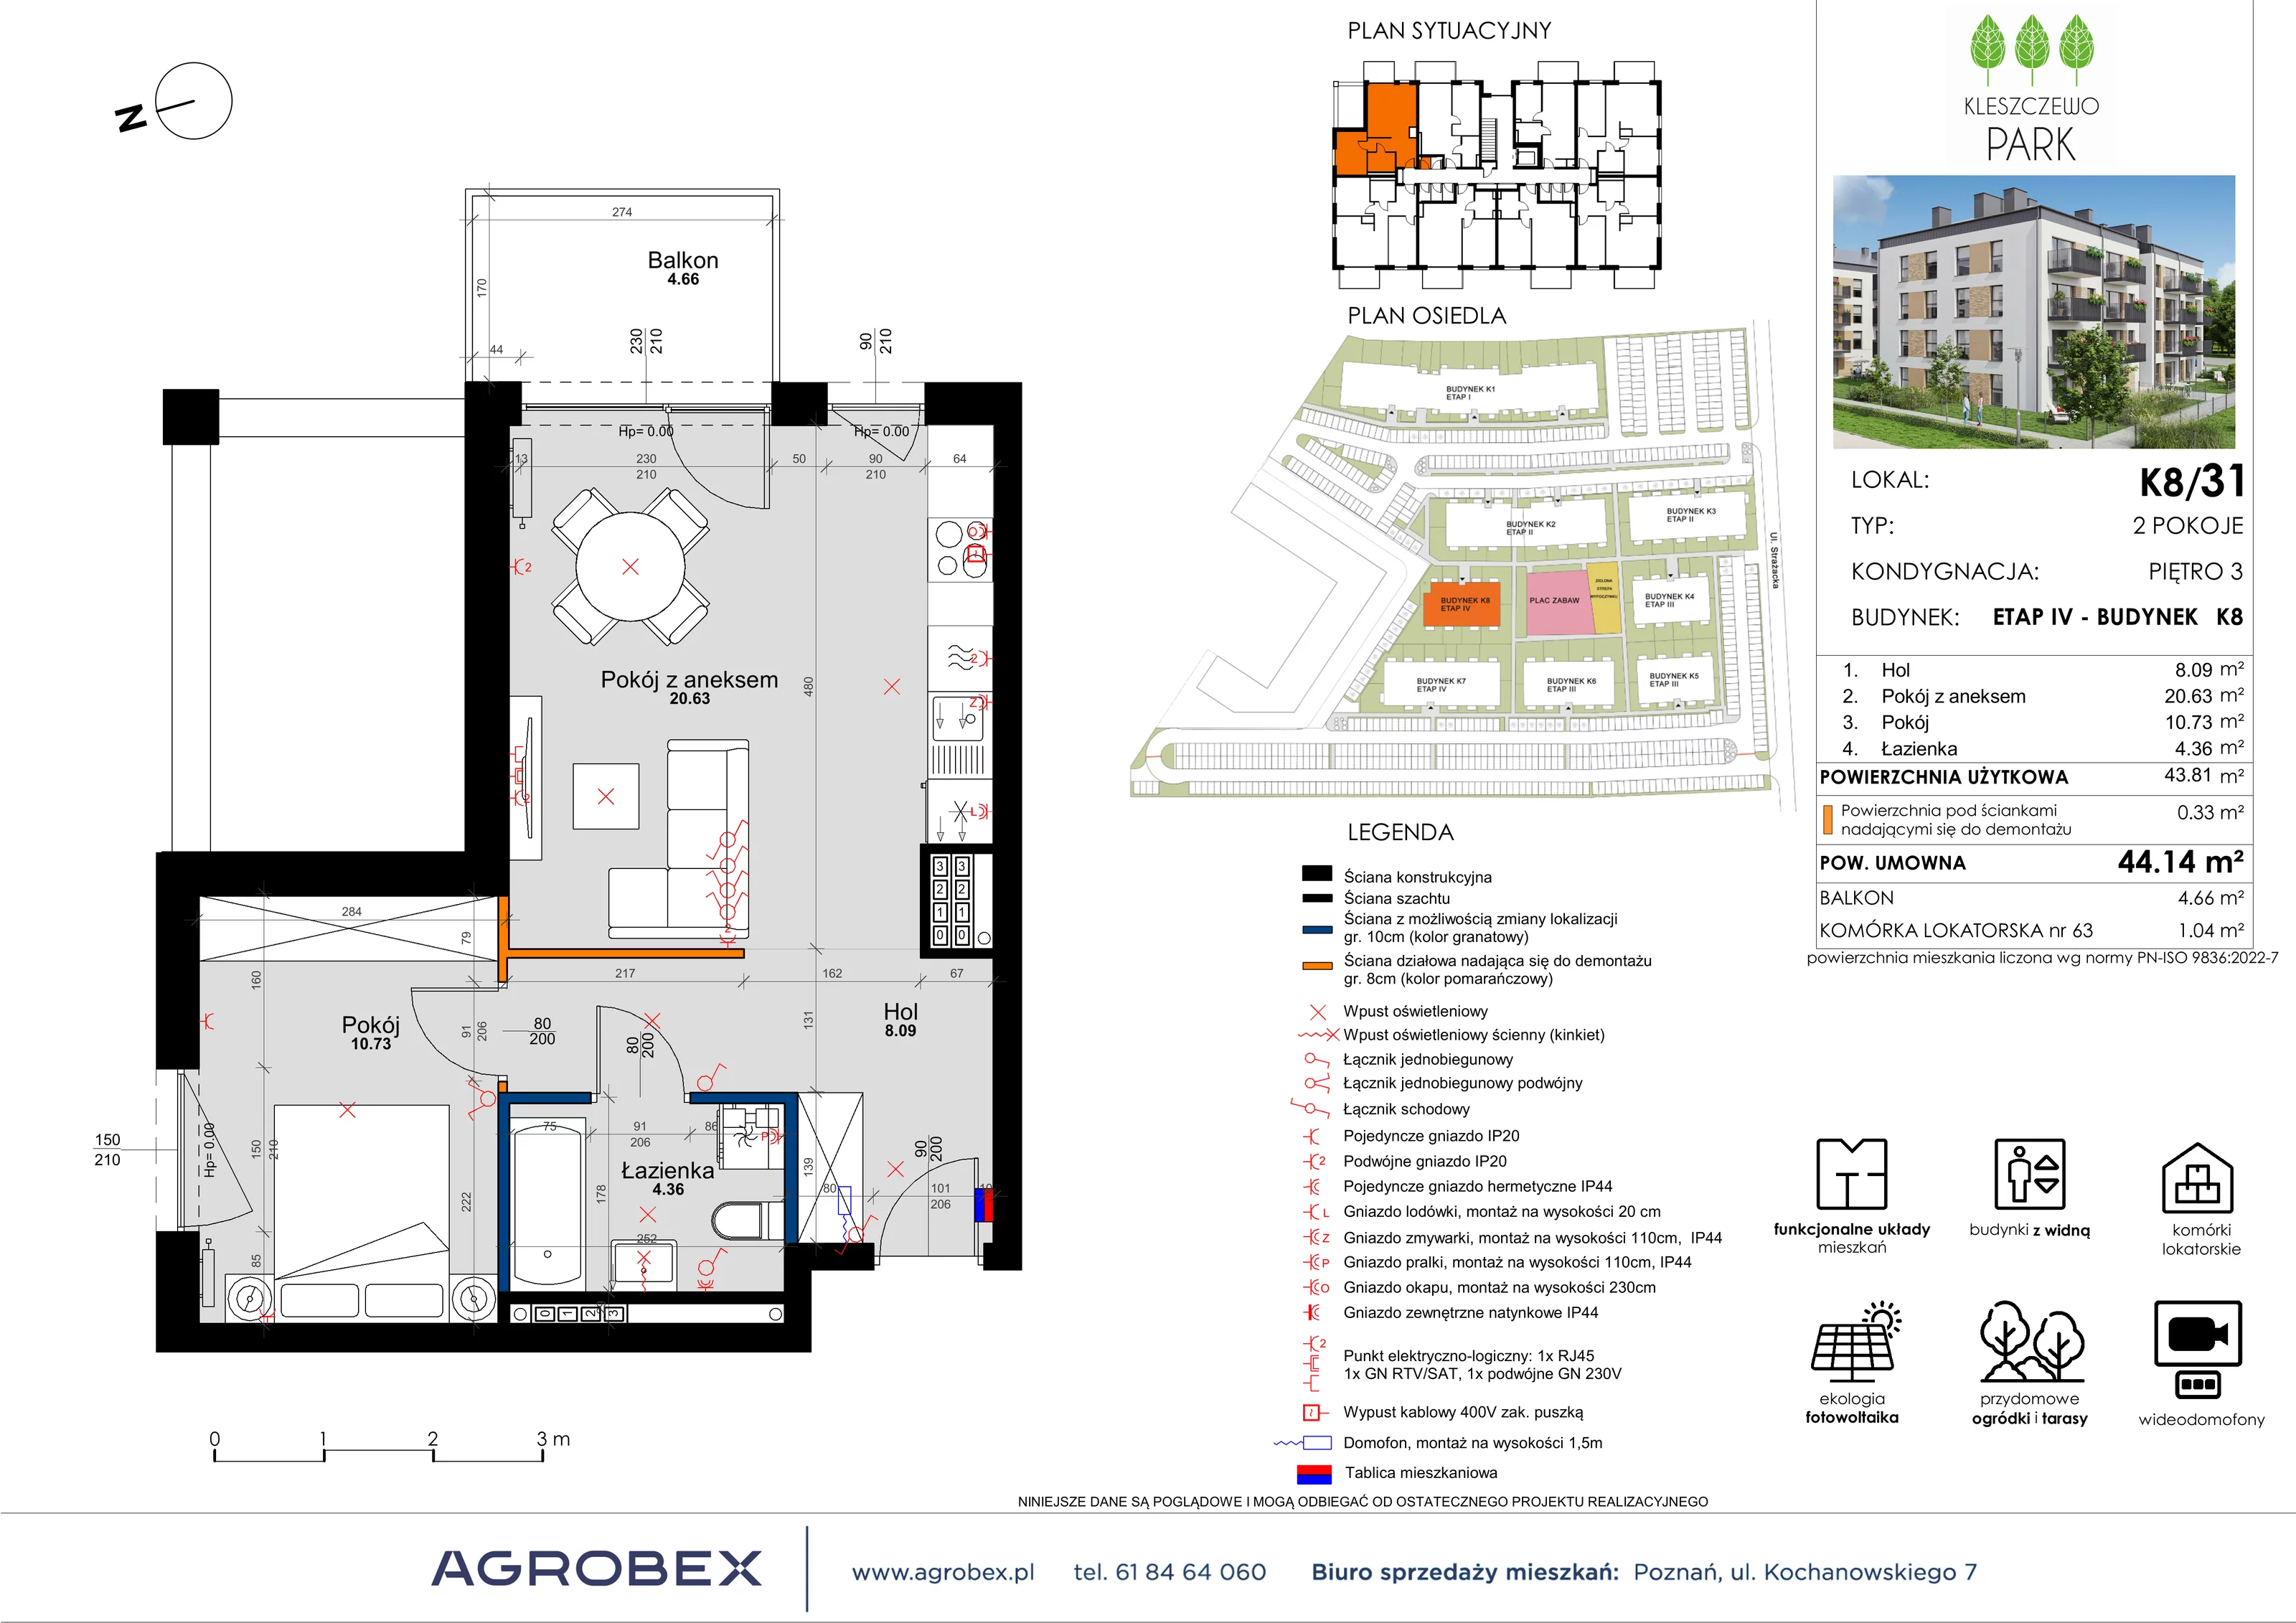 Mieszkanie 44,43 m², piętro 3, oferta nr K8/31, Kleszczewo Park, Kleszczewo, ul. Wiesławy Szymborskiej 1